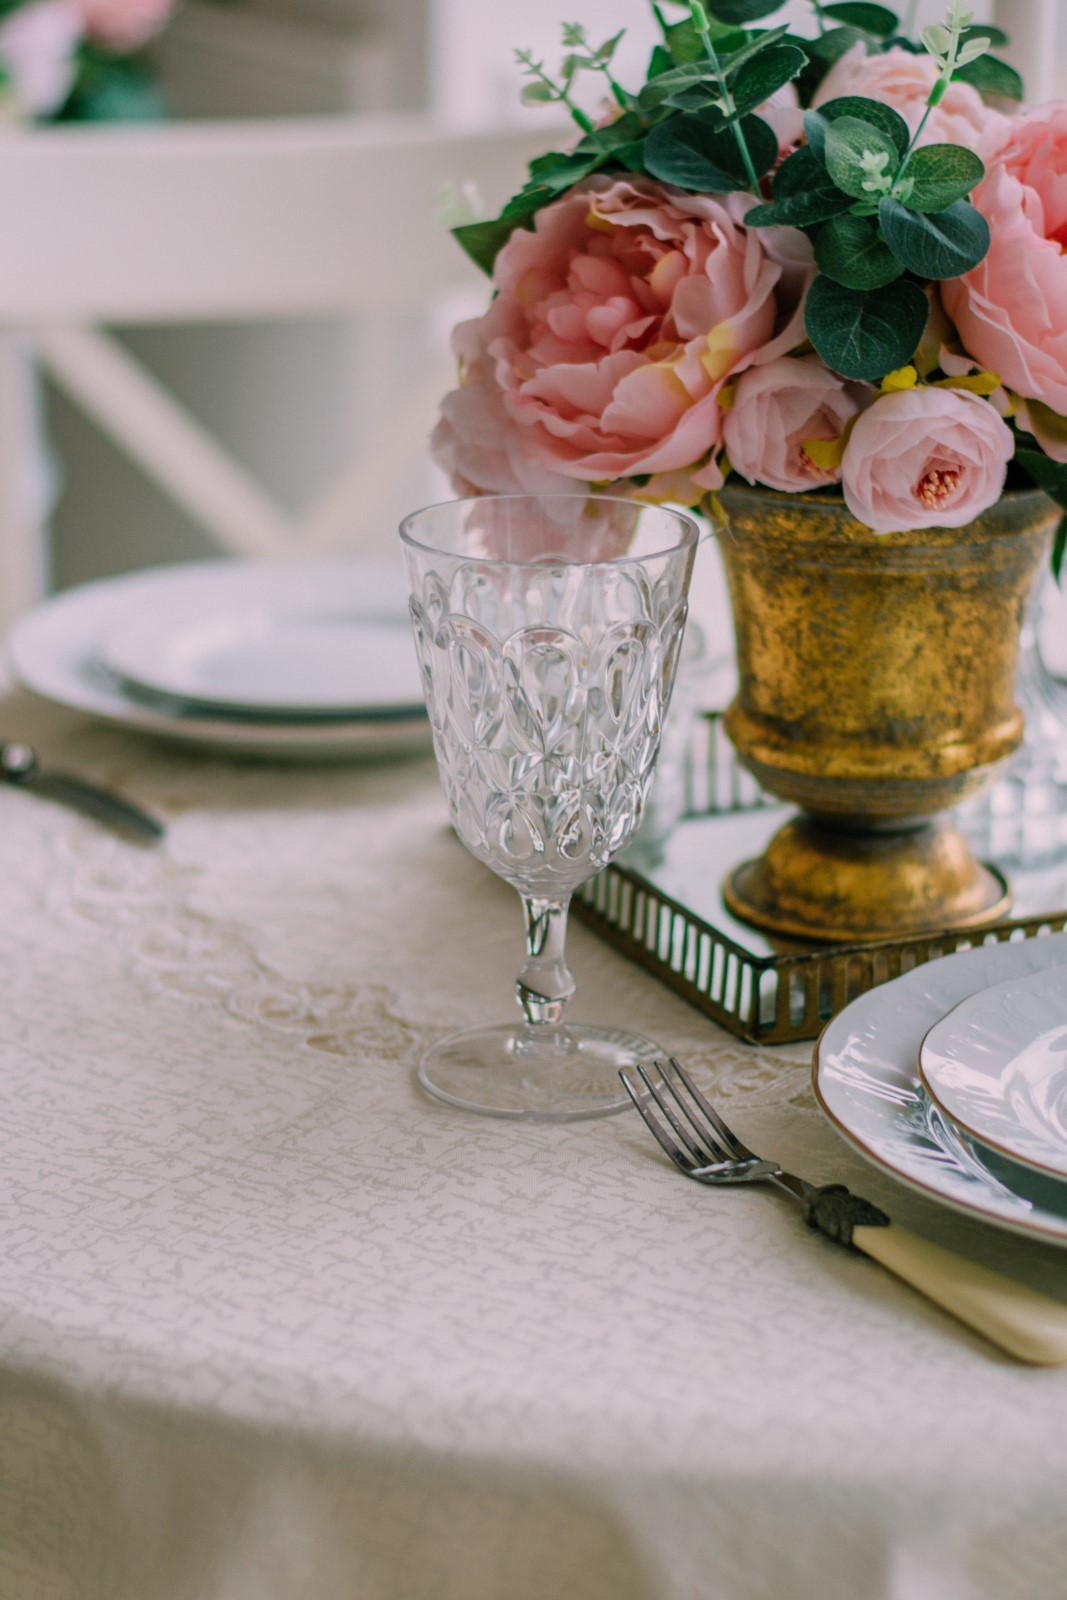 Λευκό τραπεζομάντηλο στρωμένο σε στρόγγυλο τραπέζι με σκεύη και βάζο με τριαντάφυλλα στην μέση